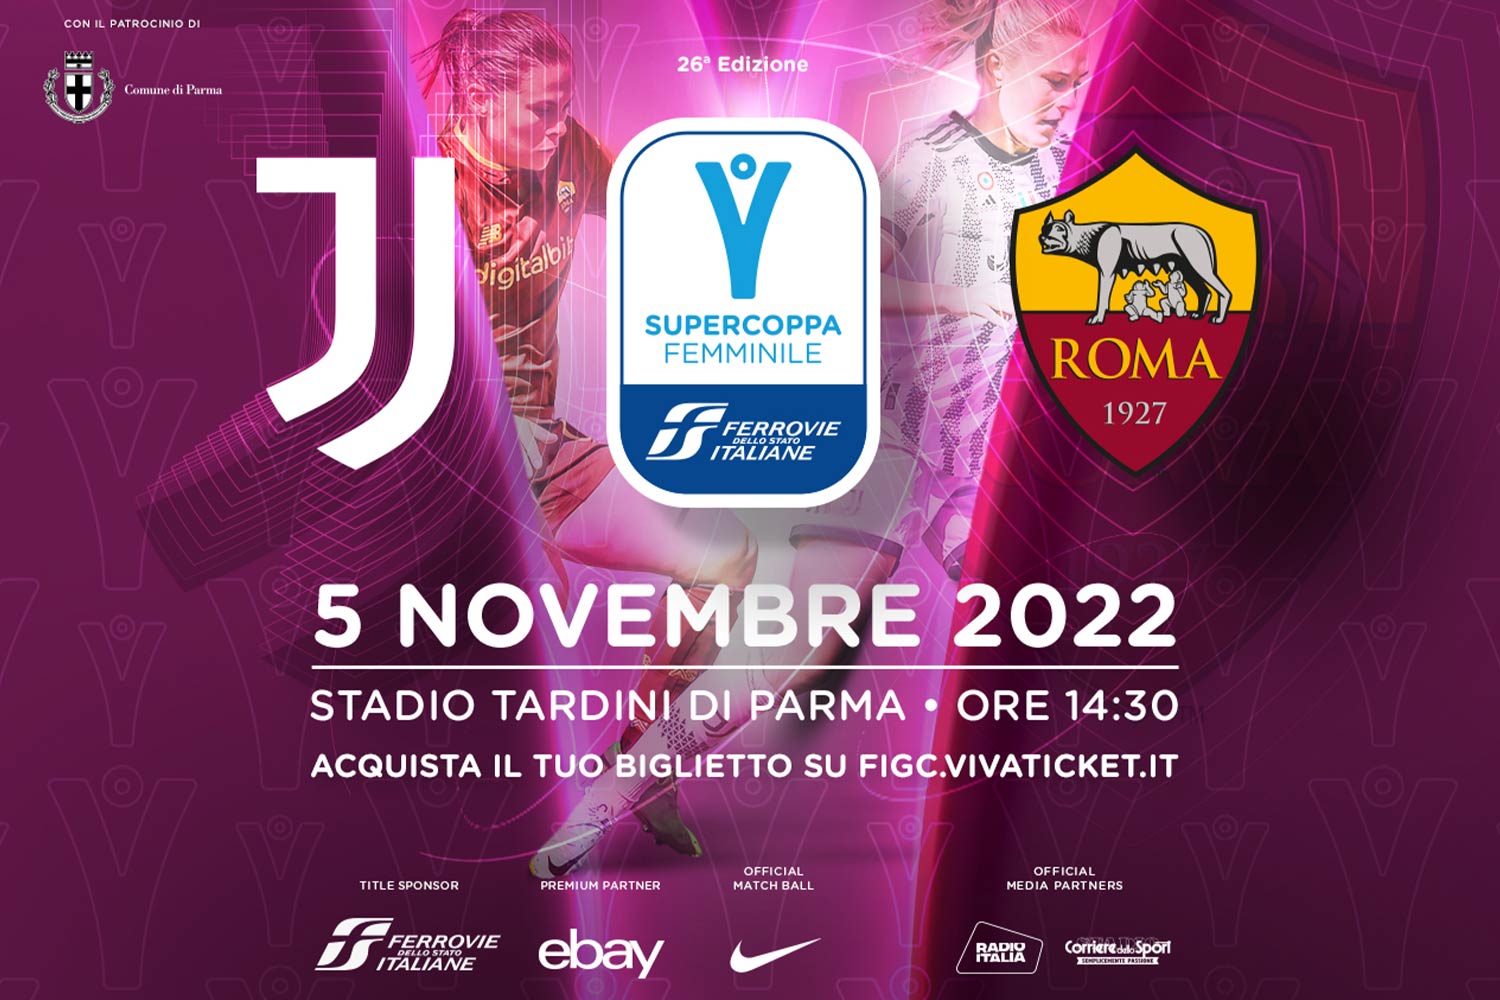 Locandina della Supercoppa Femminile Ferrovie dello Stato Italiane di calcio 2022